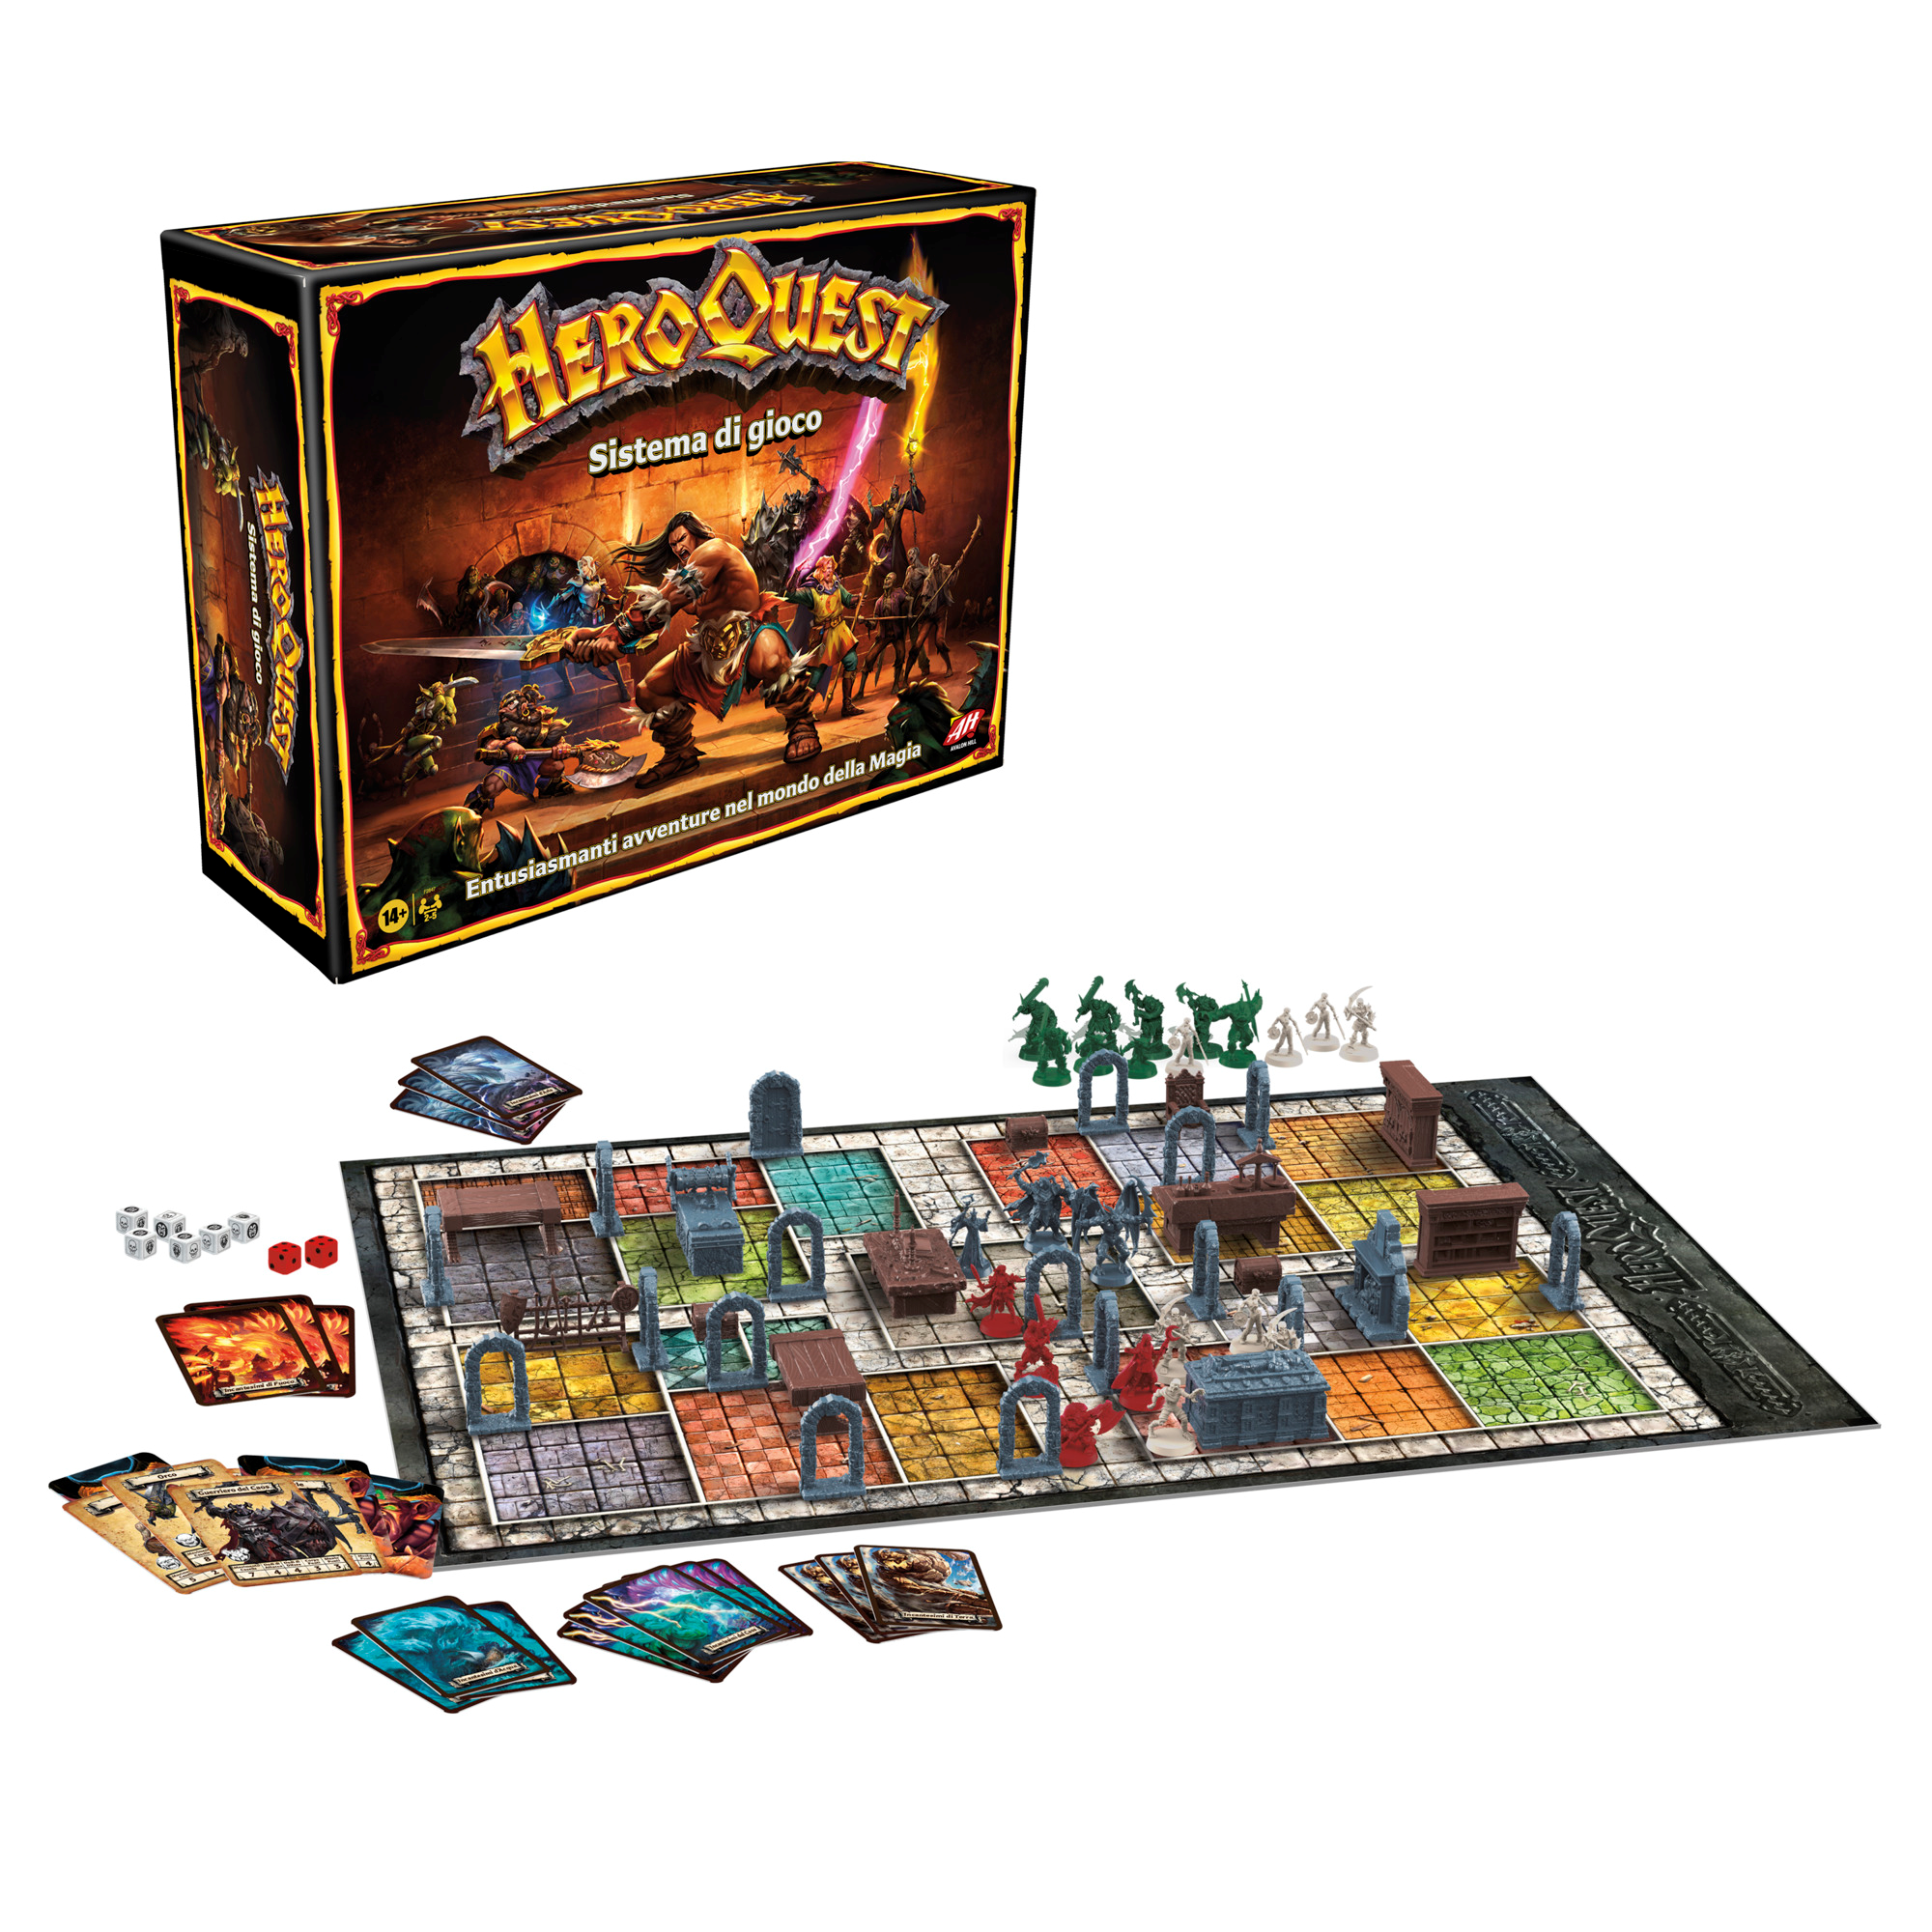 Avalon hill - heroquest, gioco di avventura fantasy con oltre 65 miniature, dai 14 anni in su, per 2-5 giocatori (versione italiana) - HASBRO GAMING